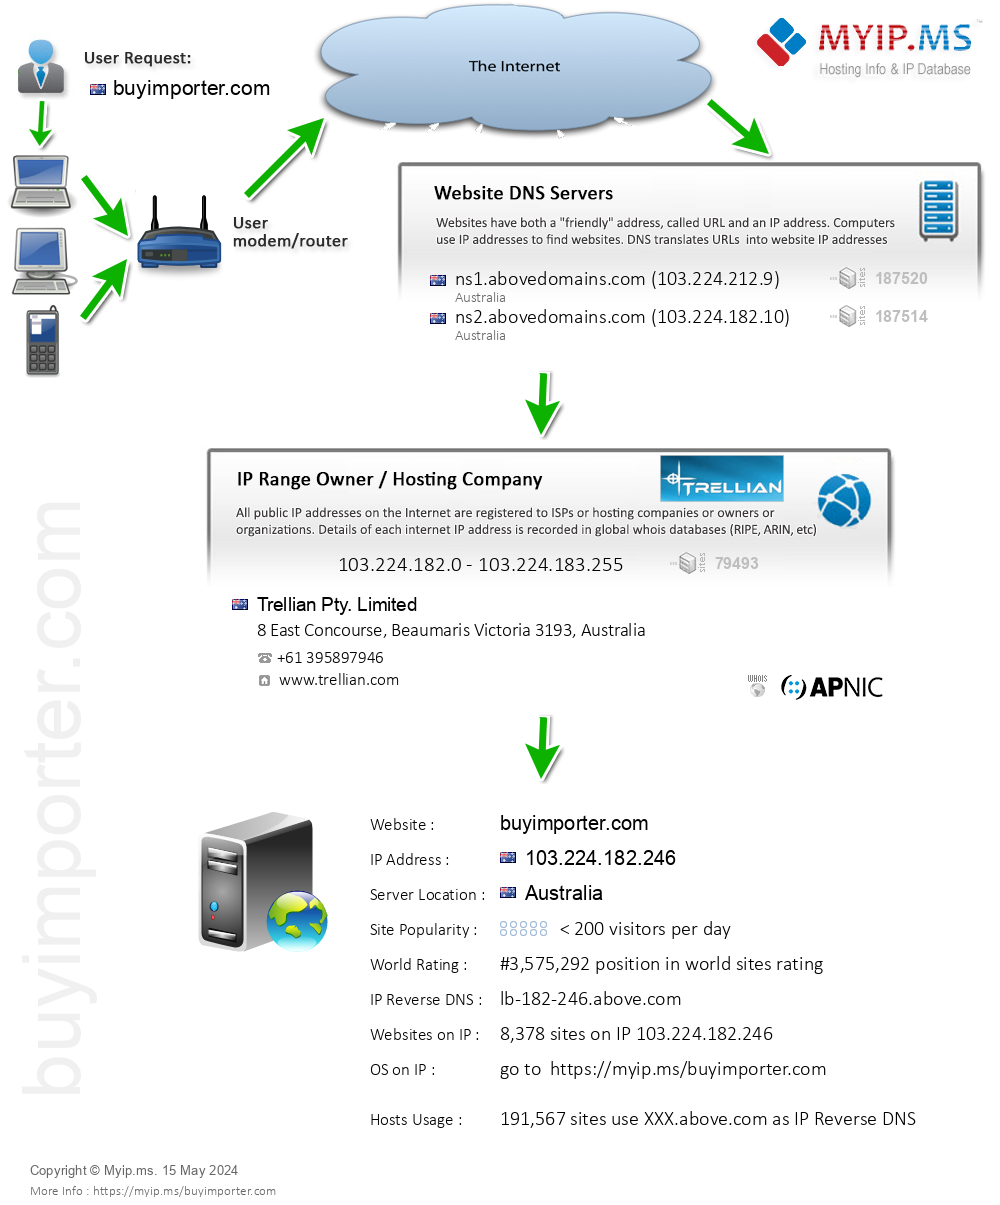 Buyimporter.com - Website Hosting Visual IP Diagram